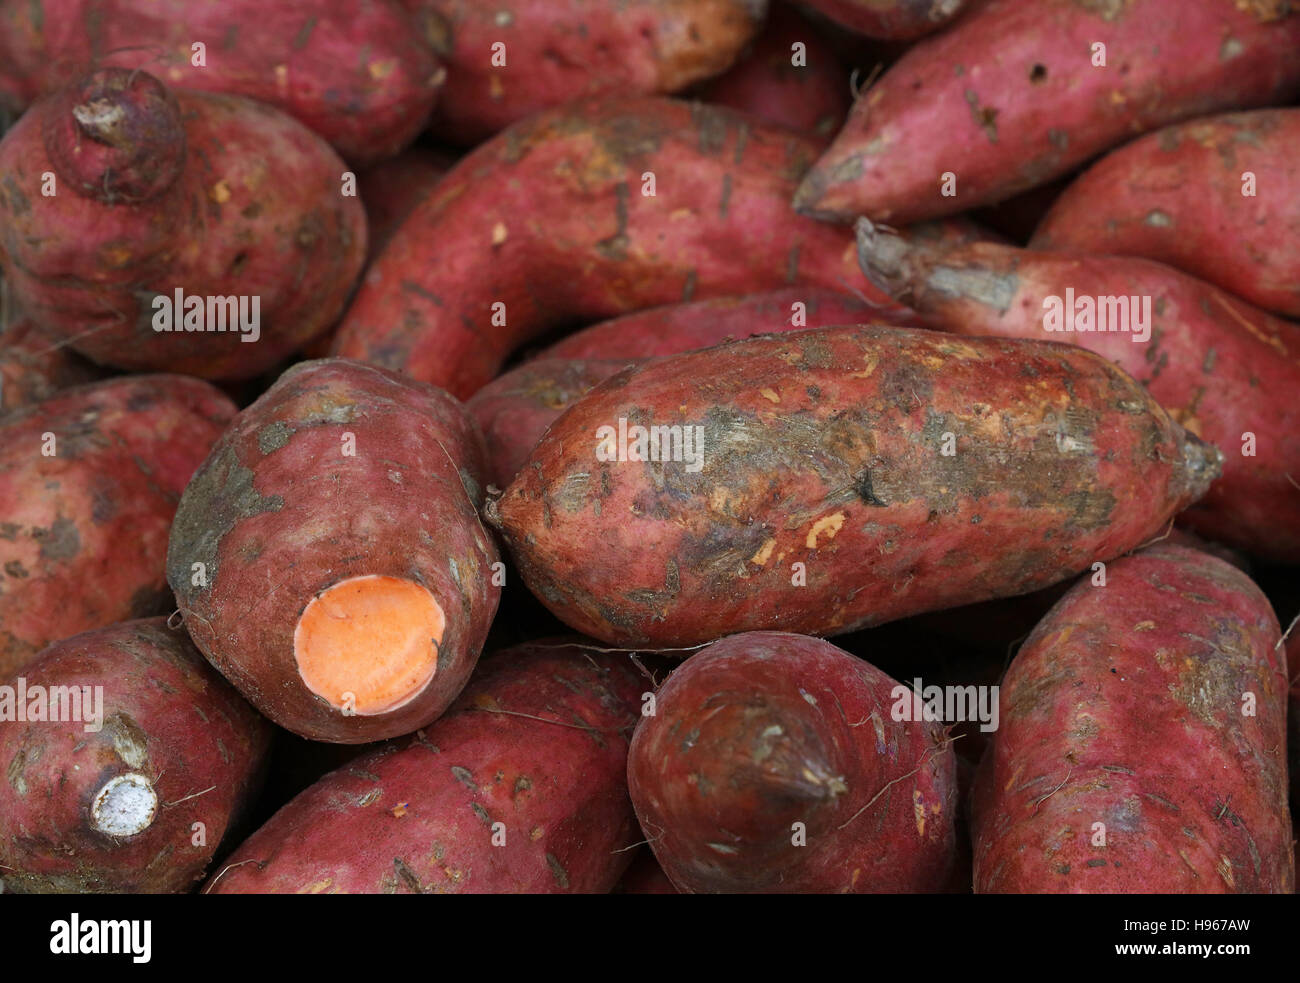 Fresh raw red sweet potato (Ipomoea batatas) roots on retail market Stock Photo